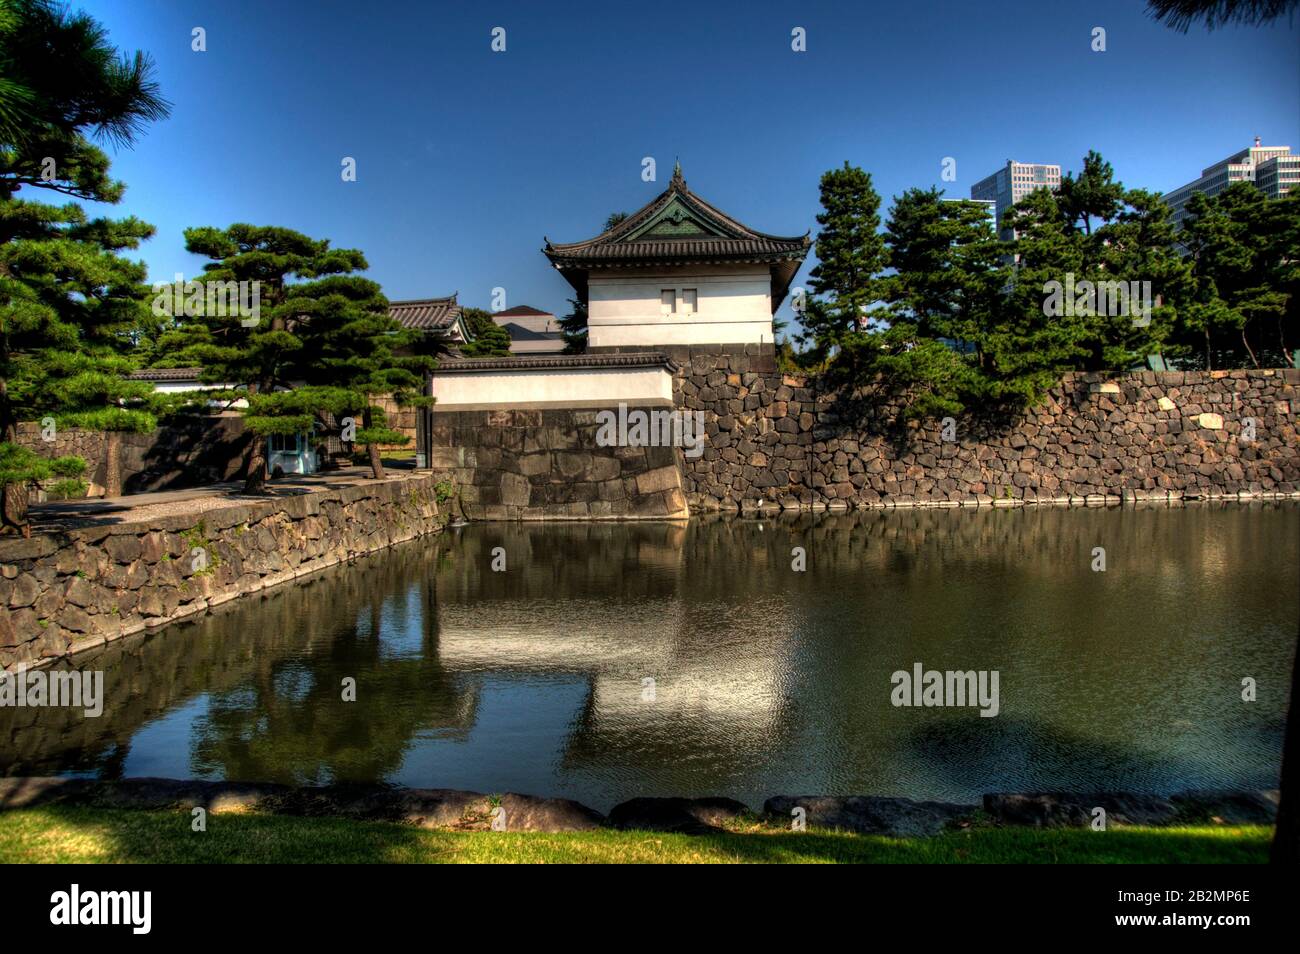 Palais et jardin d'ImSuperior à Tokyo - attraction touristique Banque D'Images